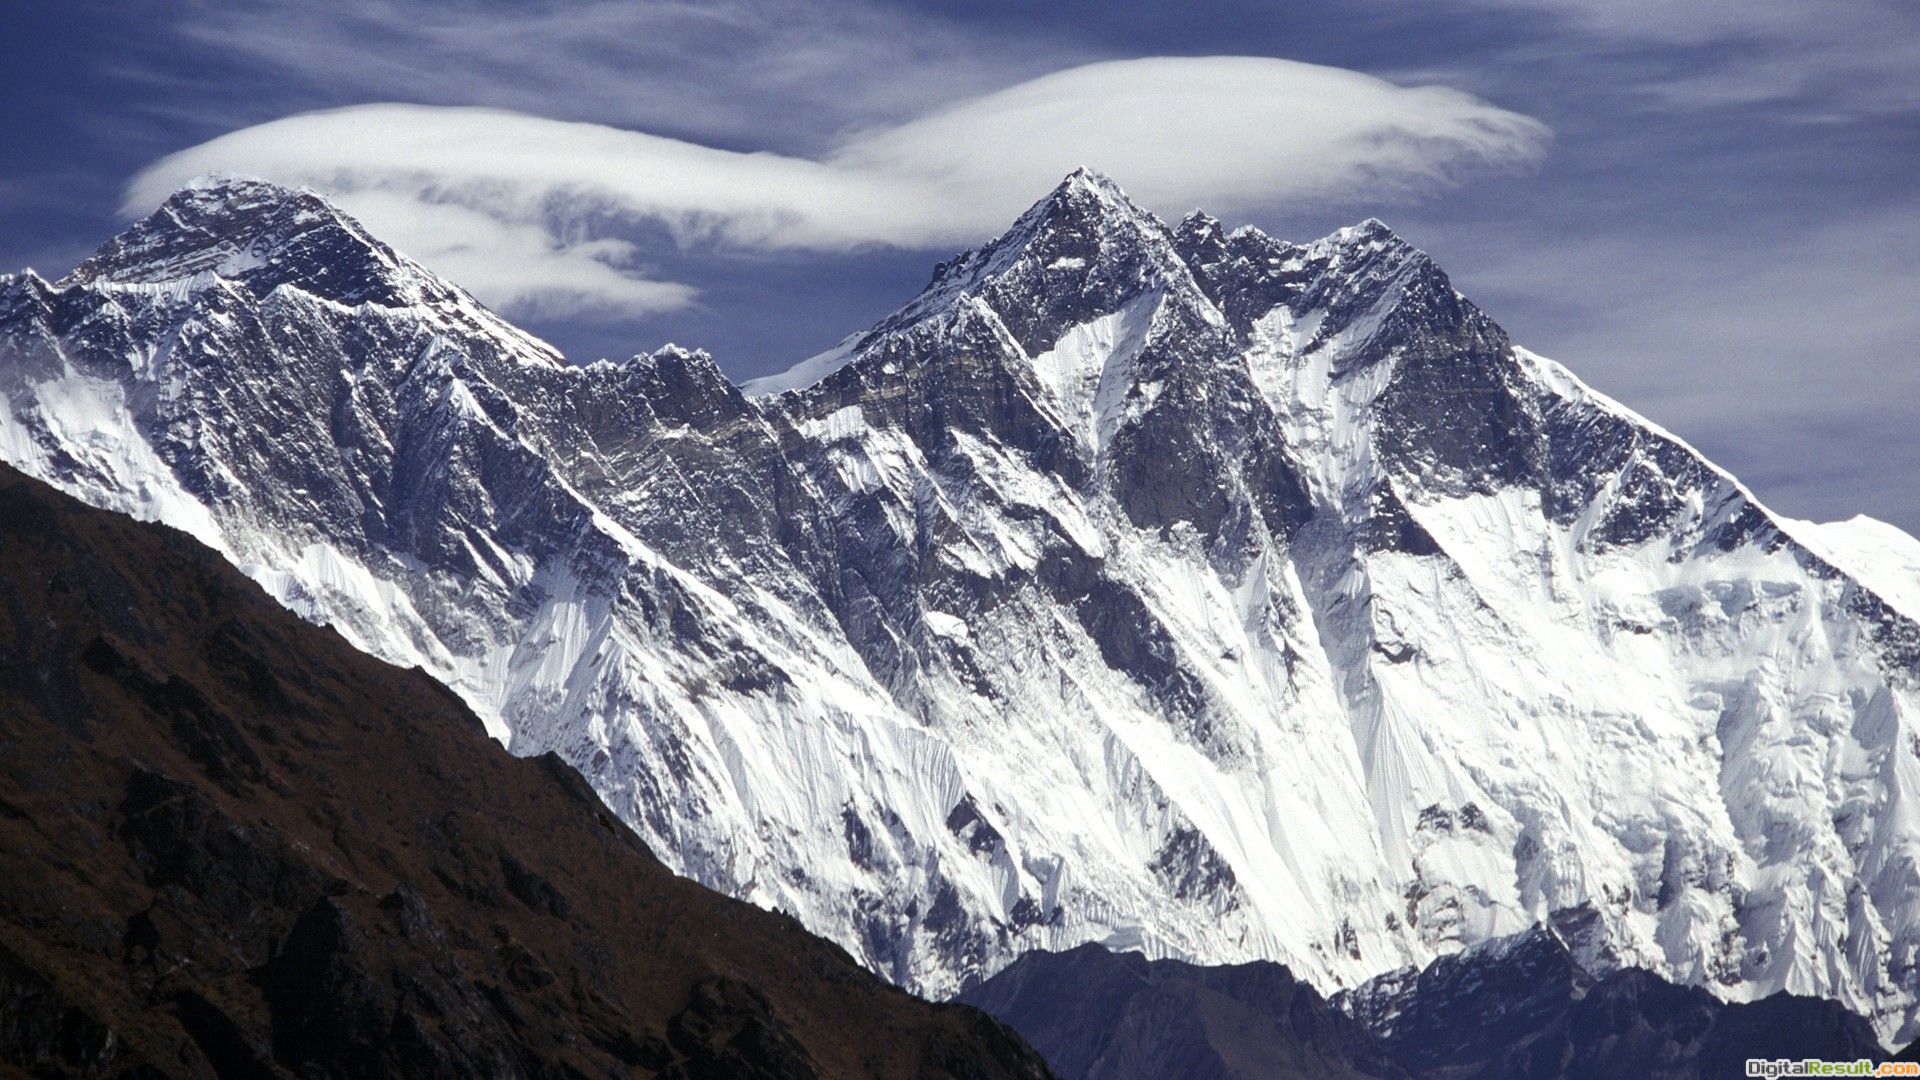 Frozen Mount Everest Wallpaper High Quality